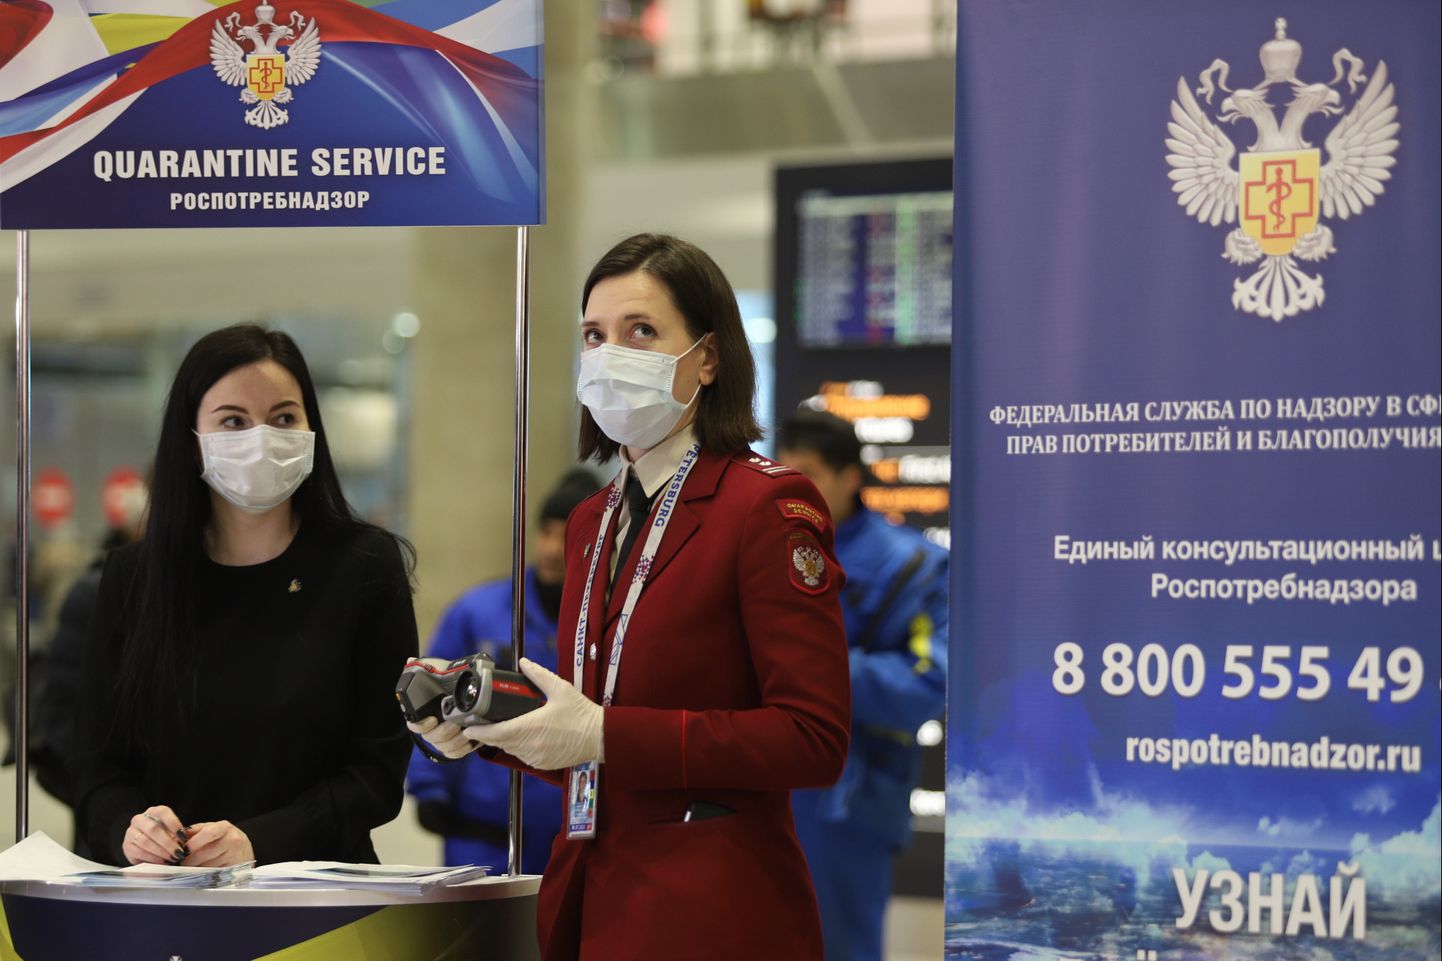 Tervishoiutöötajad mõõdavad Peteerburi lennujaama saabujate kehatemperatuuri.